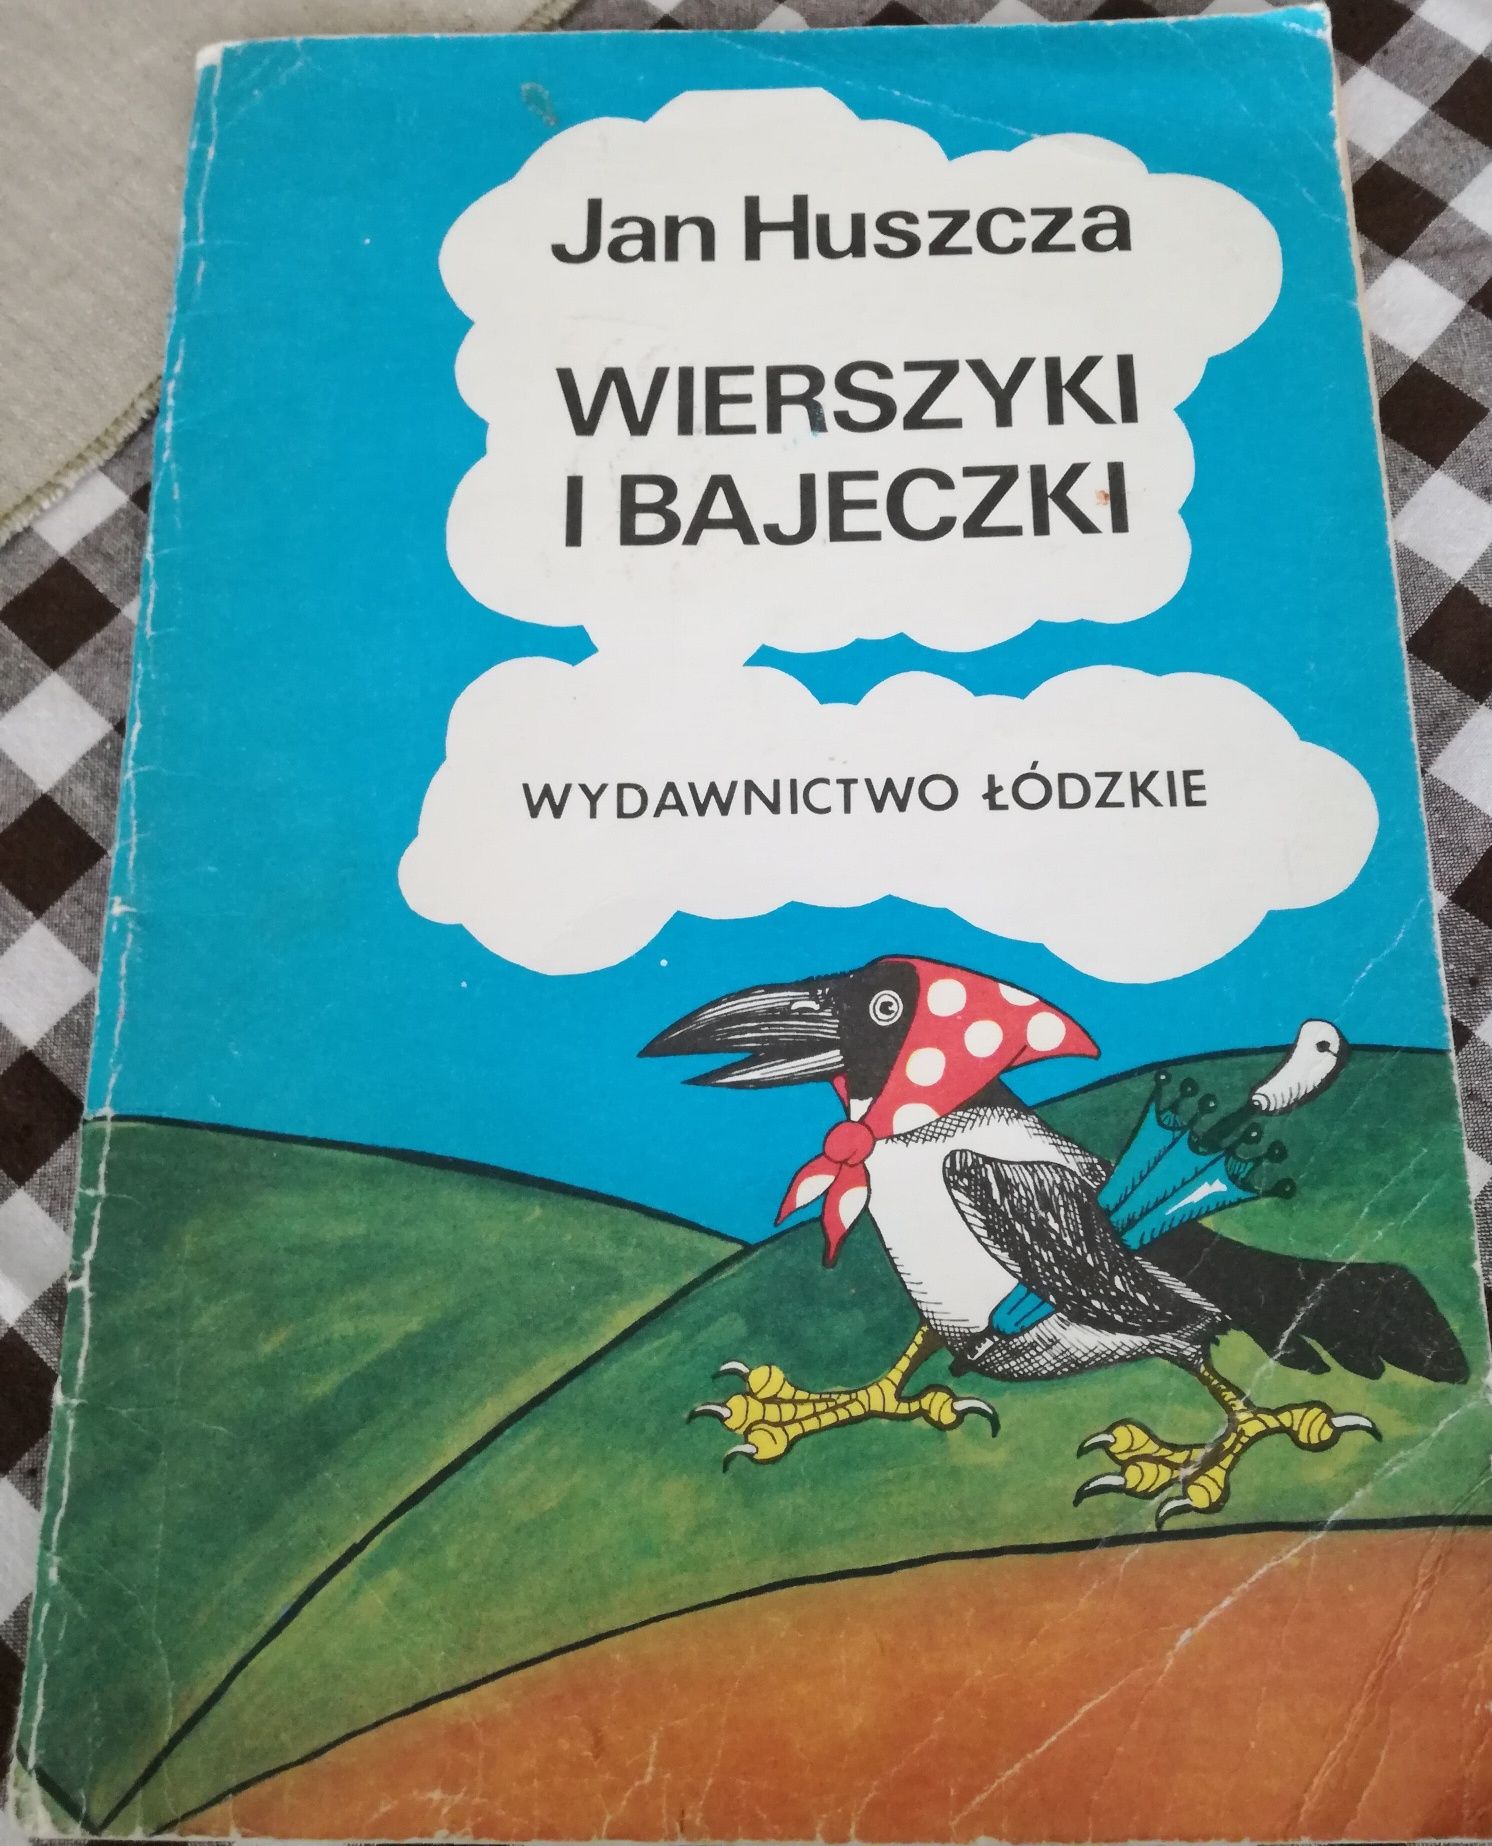 Jan Huszcza Wierszyki i Bajeczki